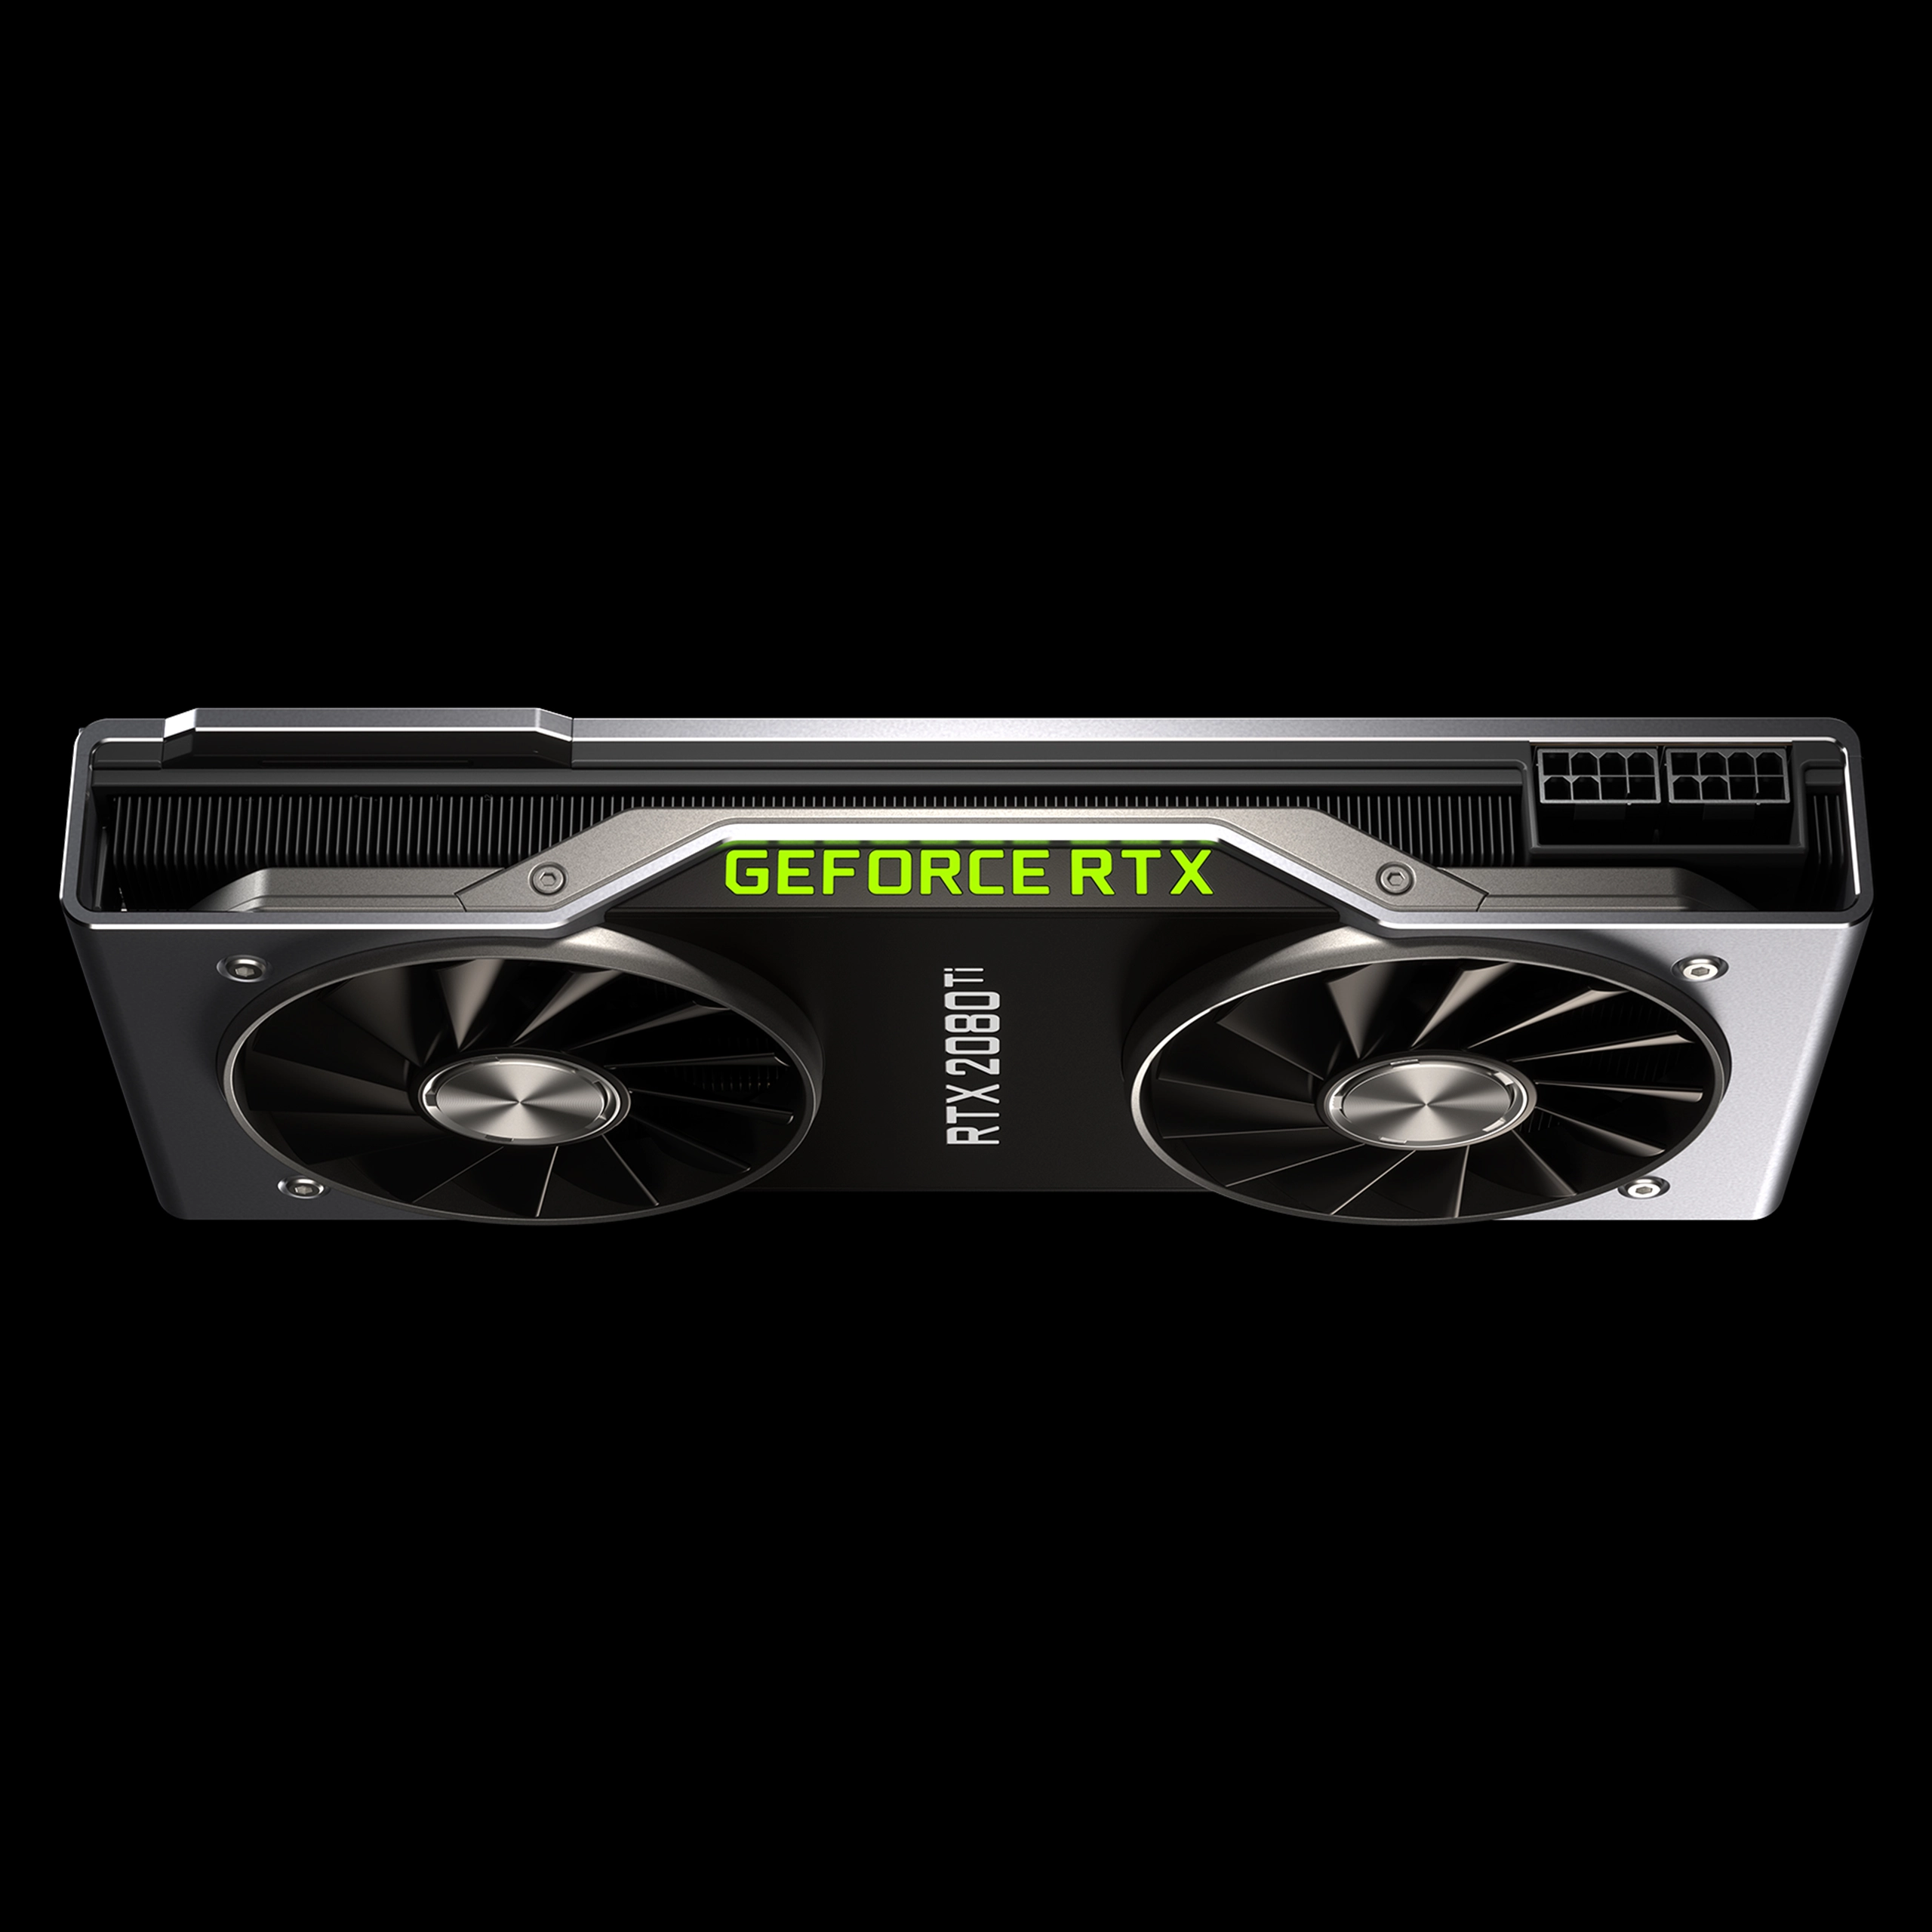 Duque Salto étnico NVIDIA GeForce RTX 2080 Ti: características, especificaciones y precios |  Geektopia